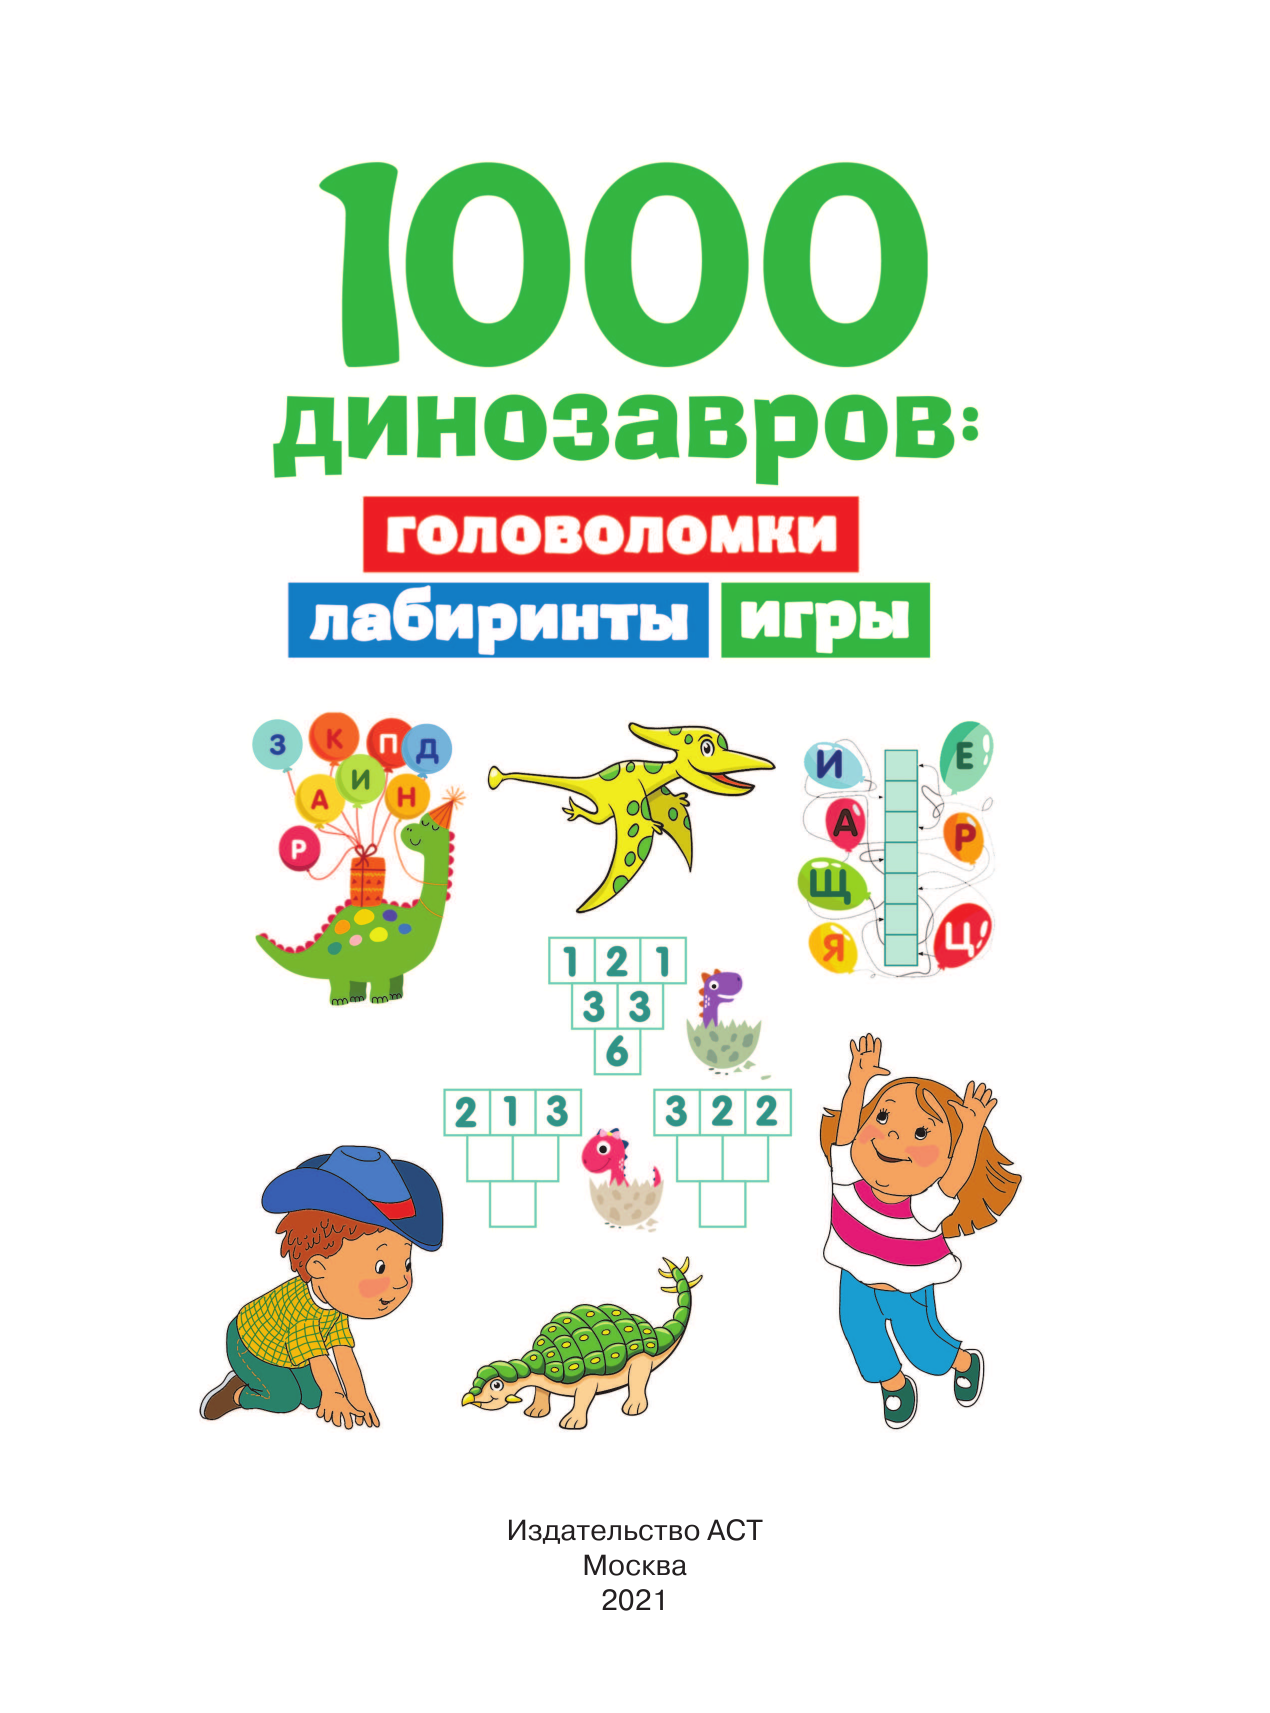  1000 динозавров: головоломки, лабиринты, игры - страница 2